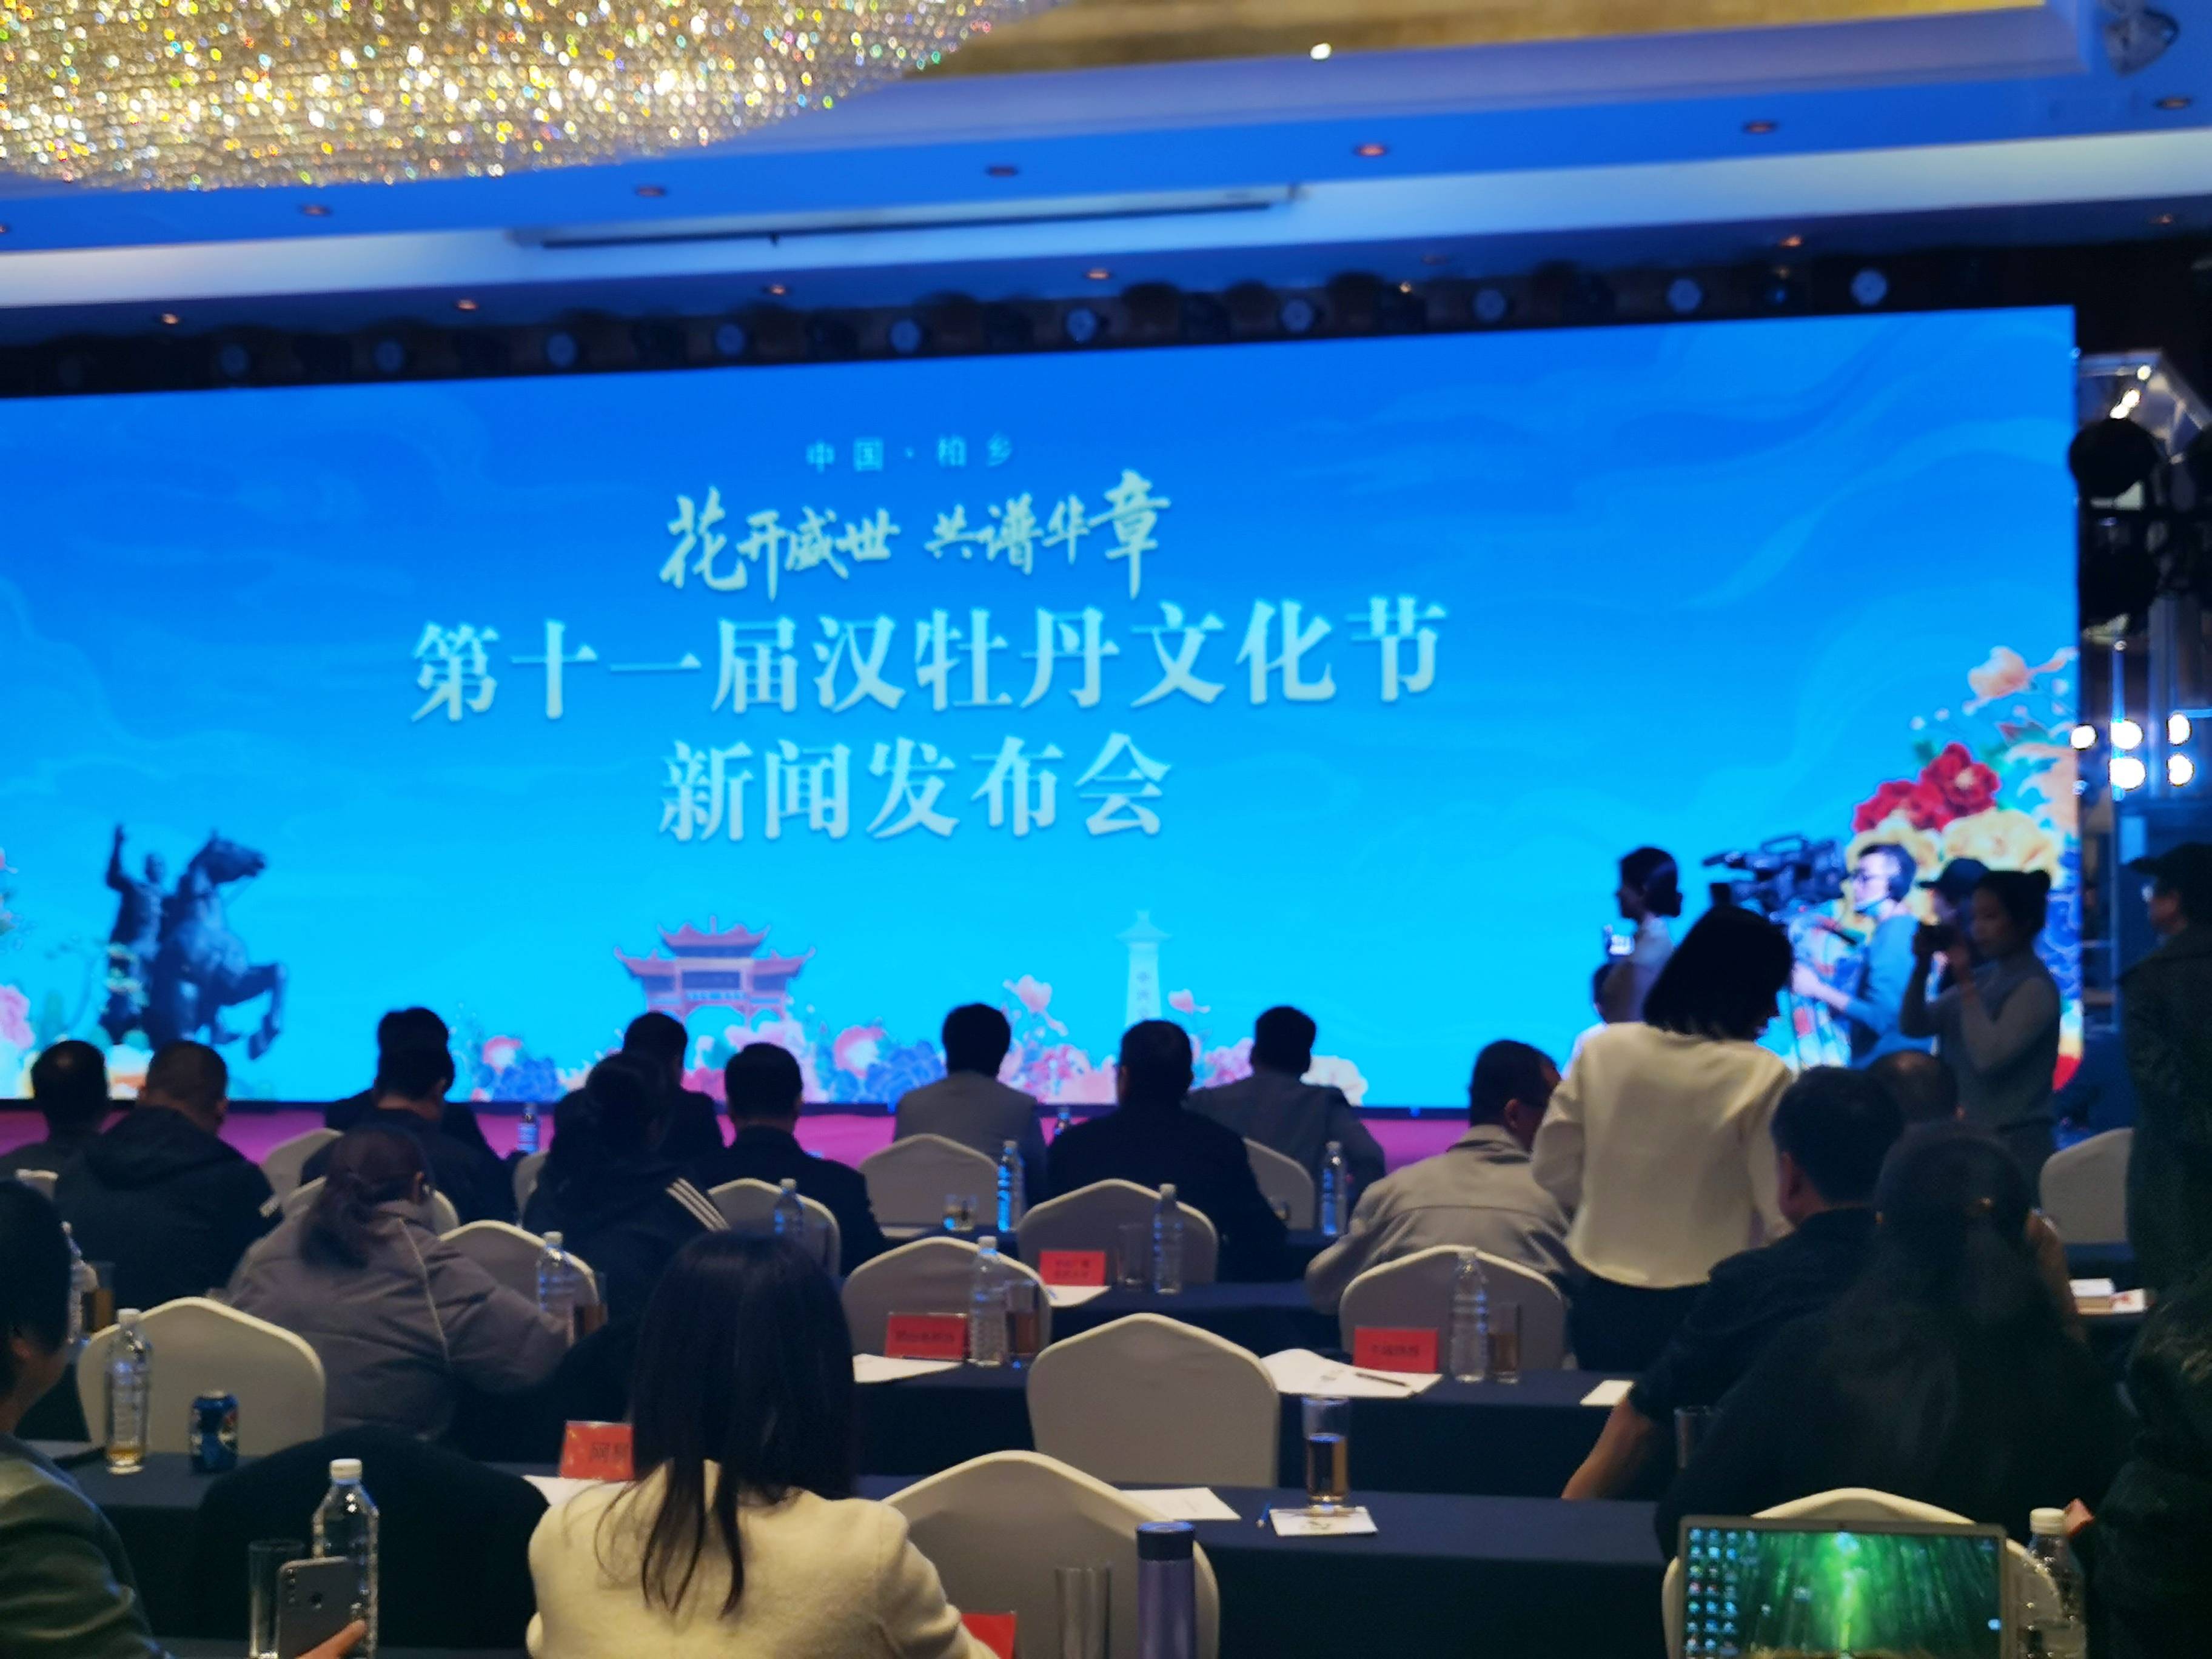  第十一届汉牡丹文化节新闻发布会在石家庄举行